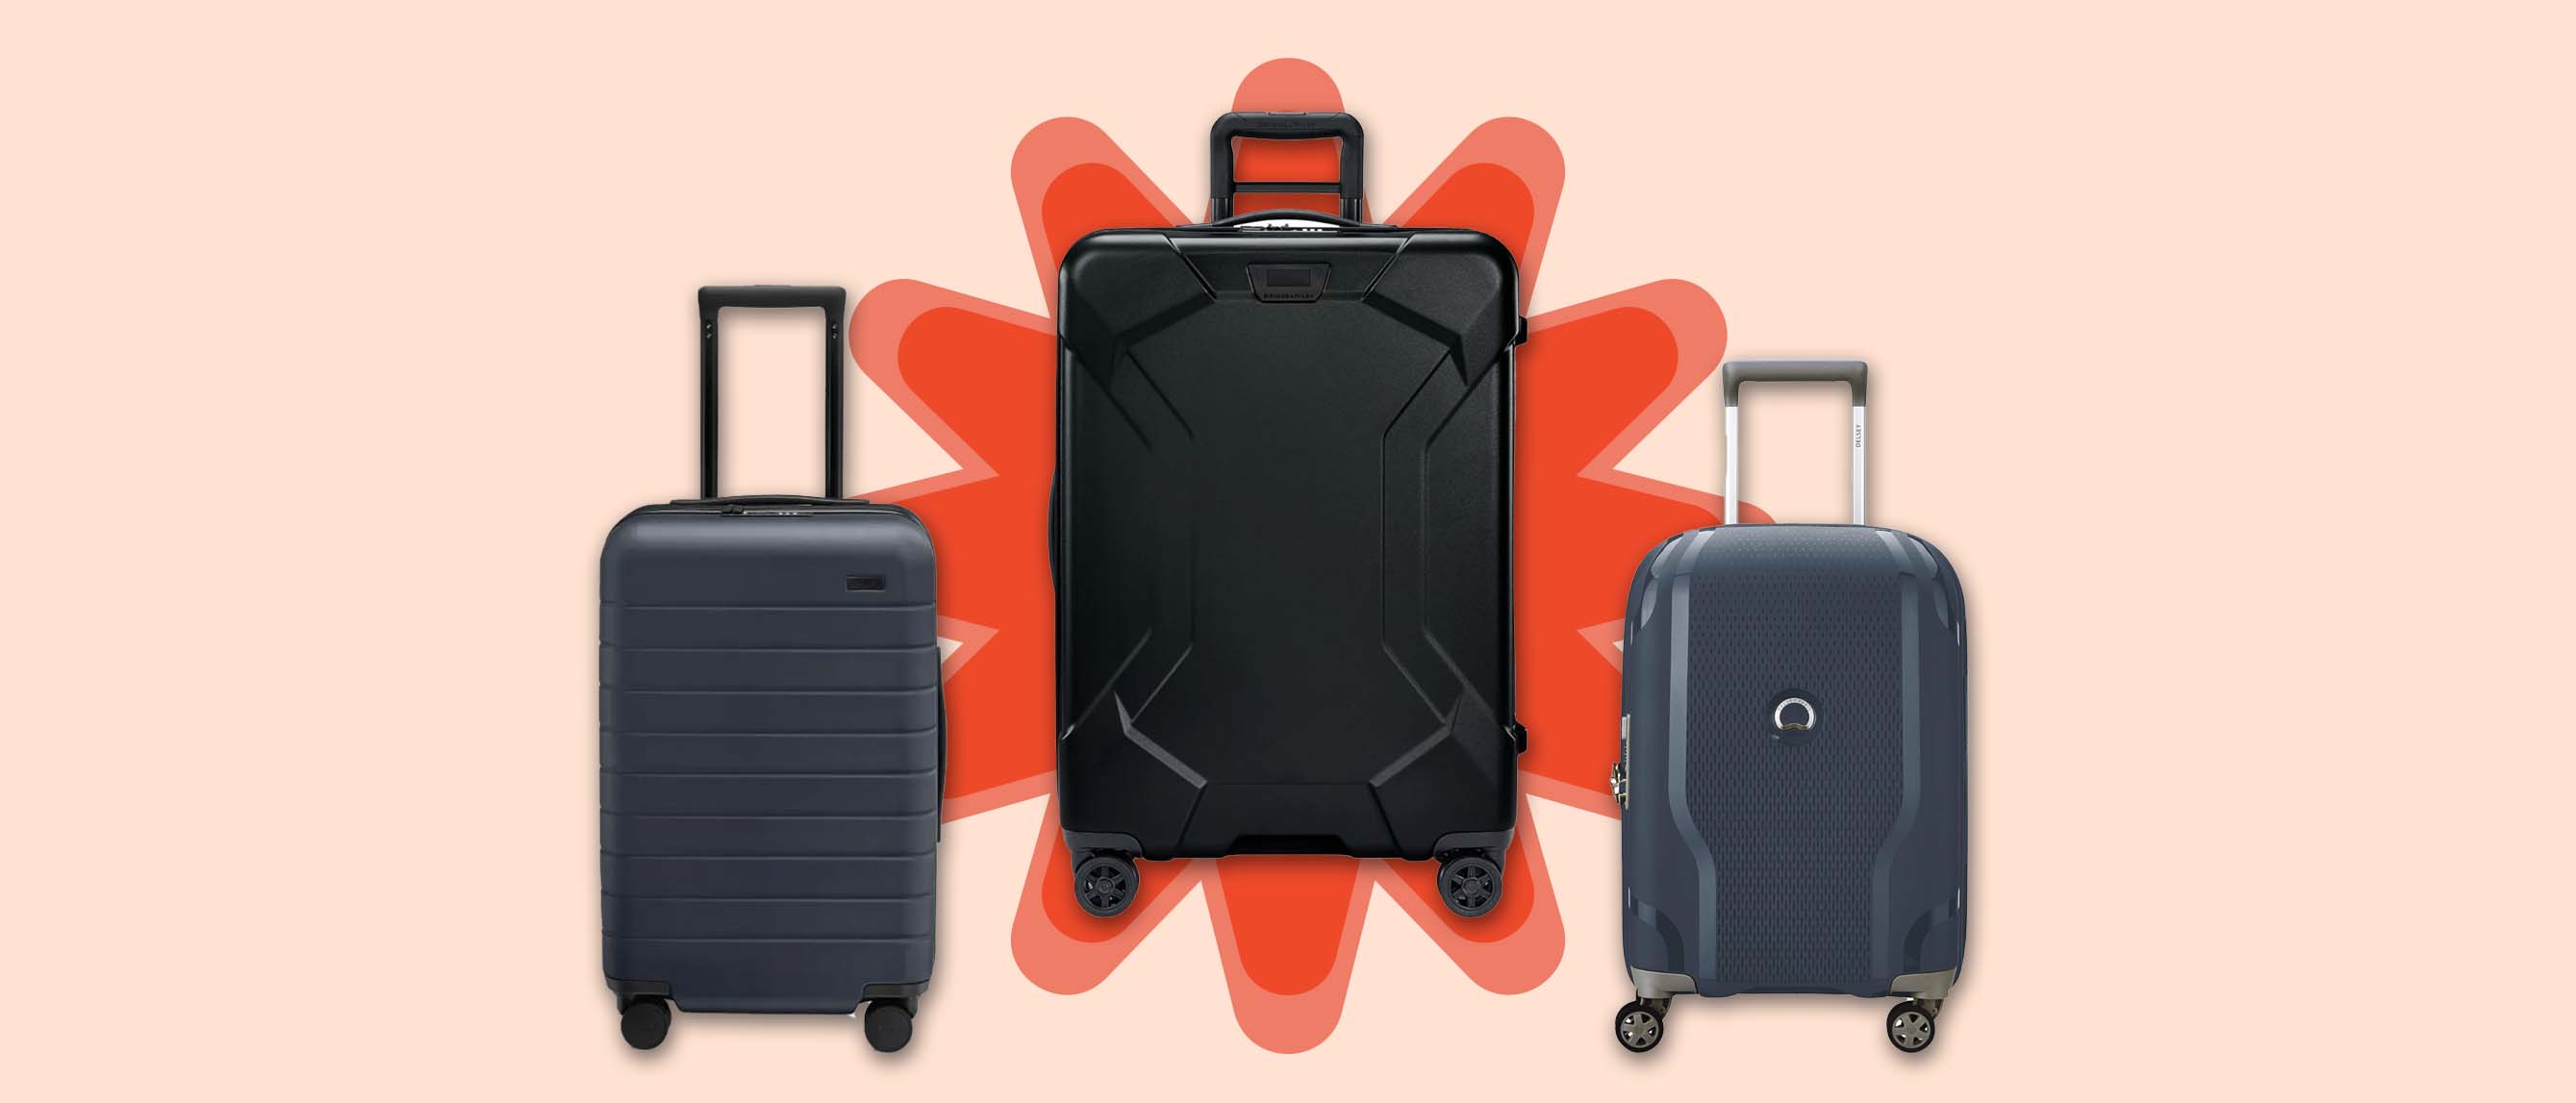 Three lightweight hardside luggage